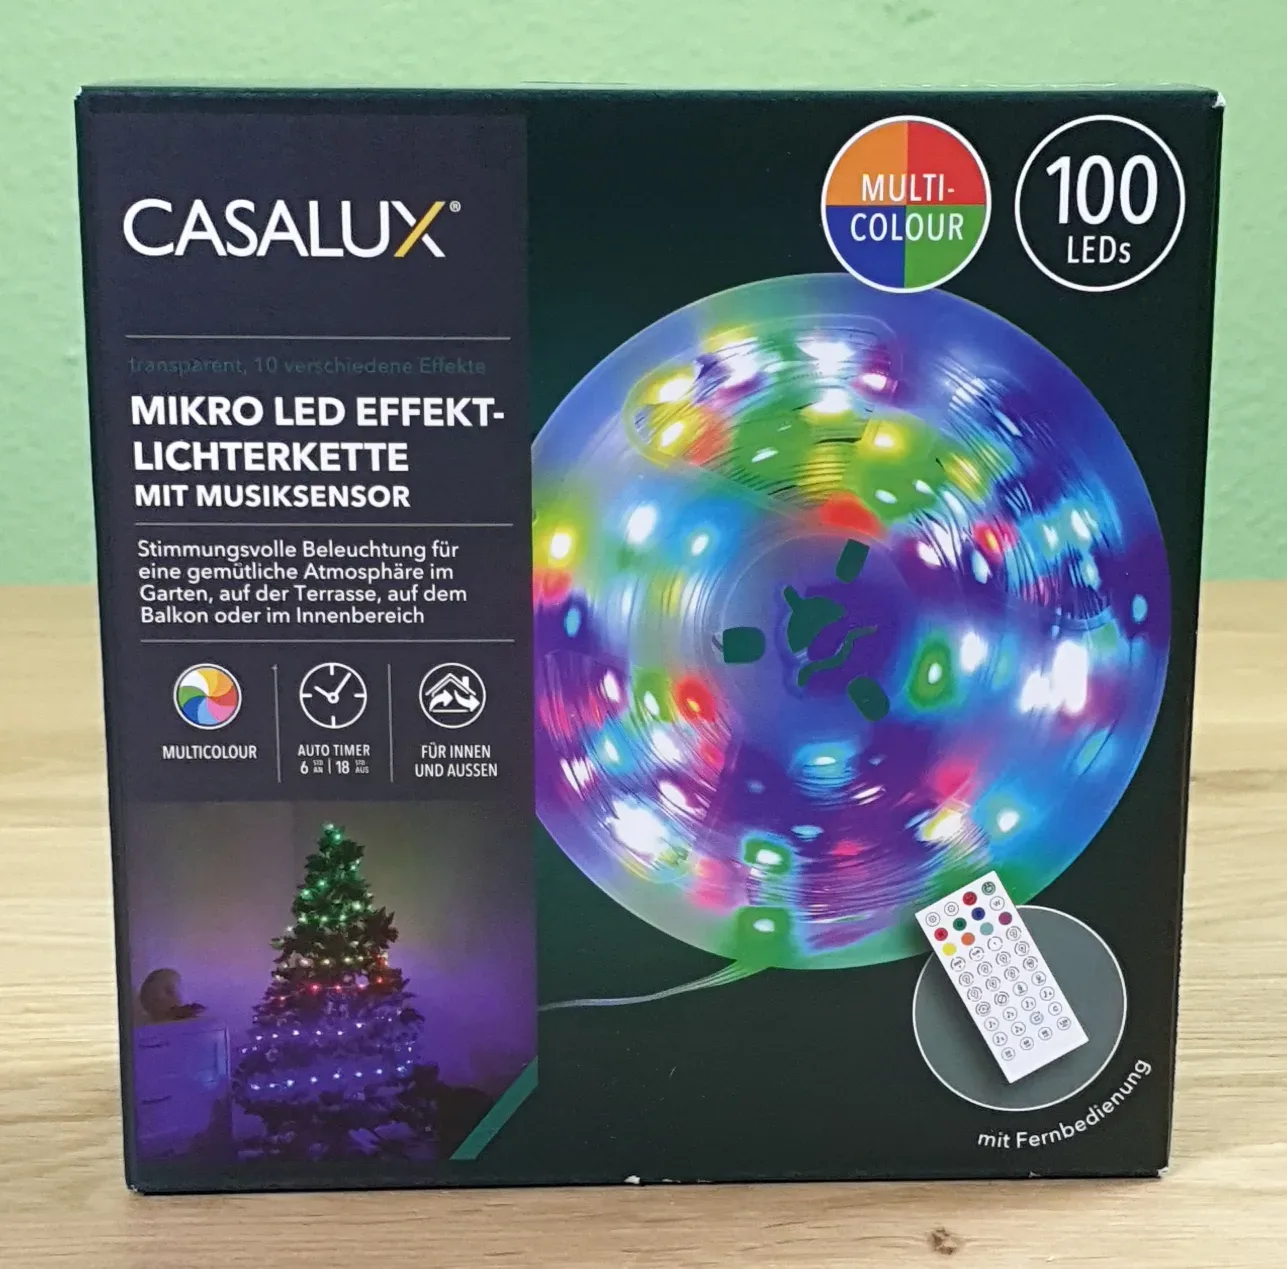 Produktbild der CASALUX Mikro LED Effekt Lichterkette von vorne